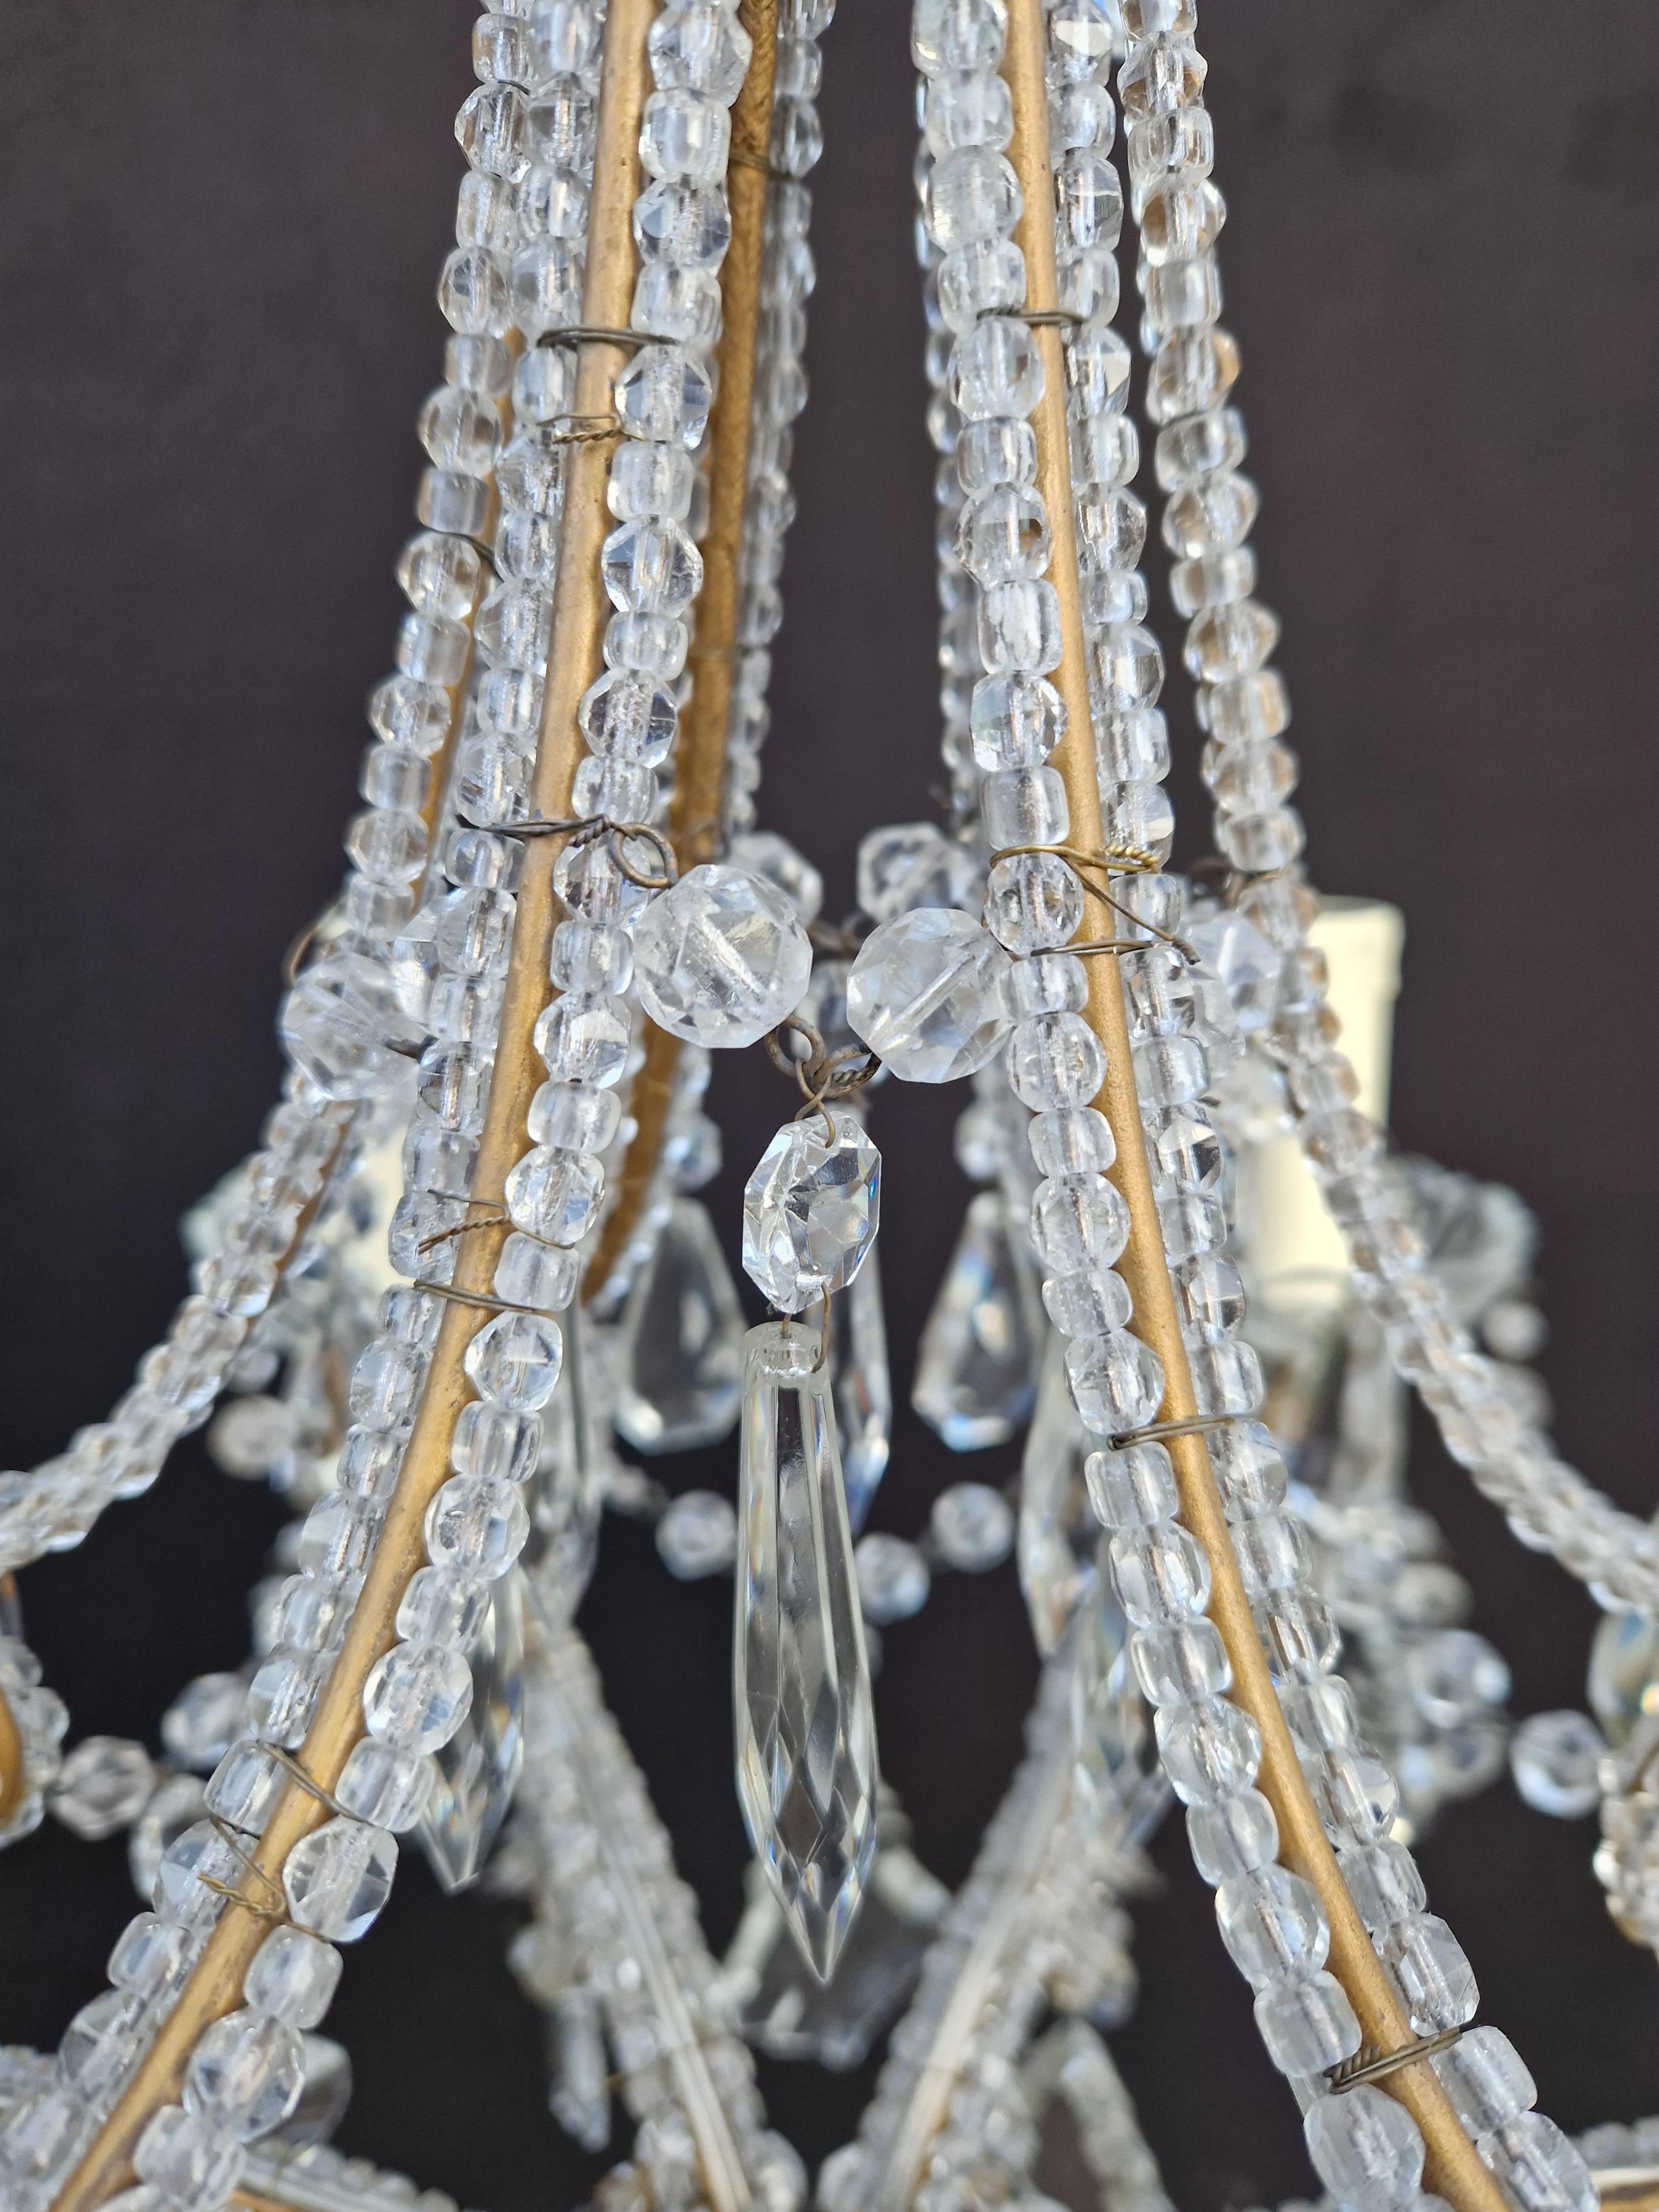 Candelabrum Crystal Antique Chandelier Ceiling Lustre Art Nouveau 1